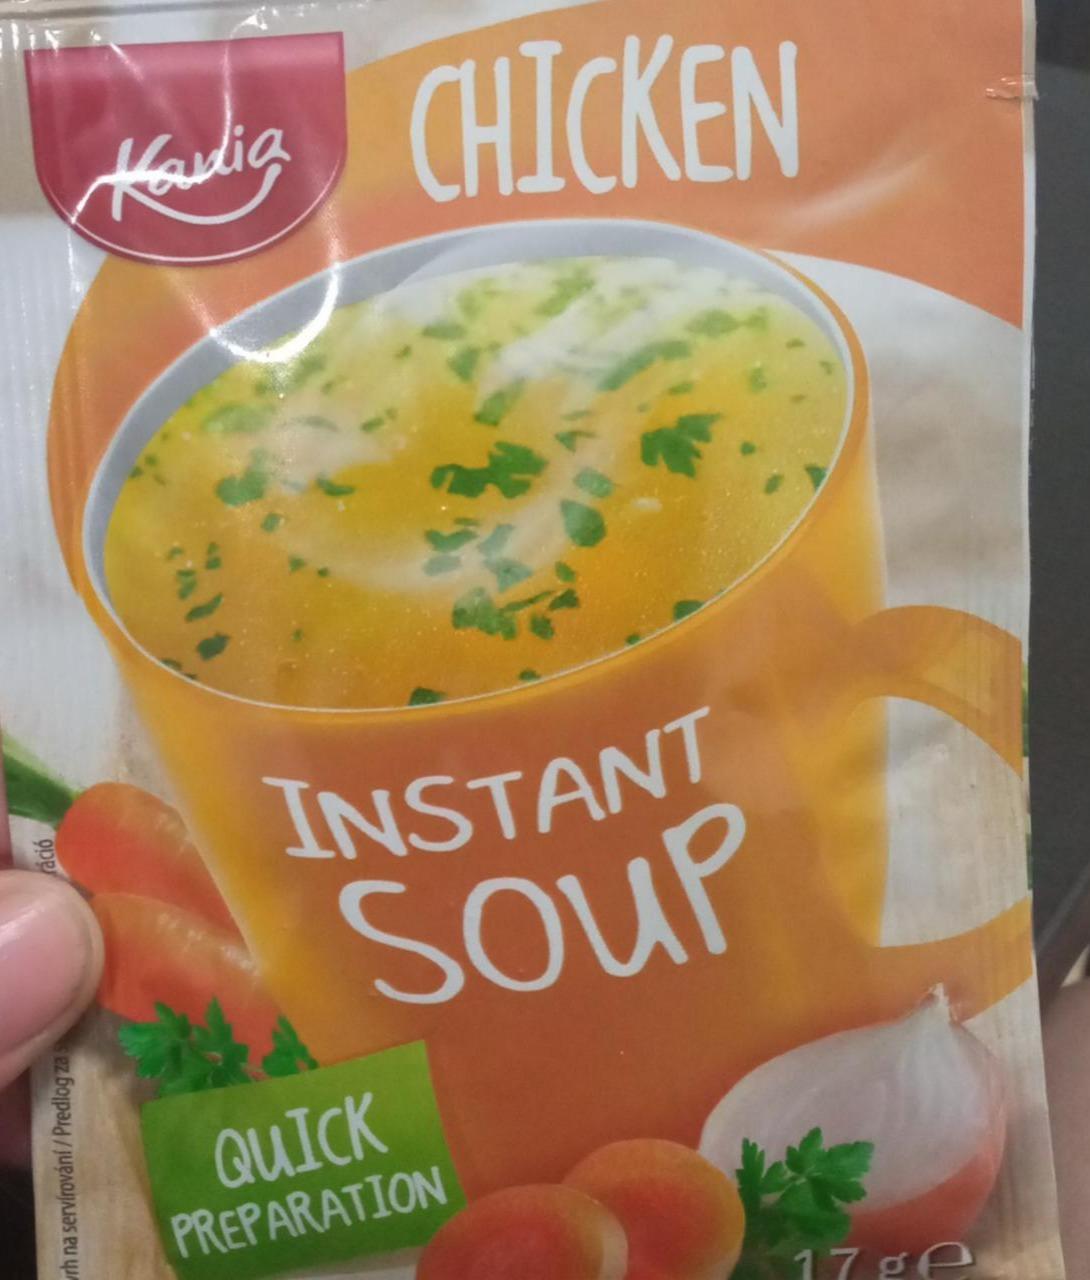 Képek - Chicken instant soup Kania